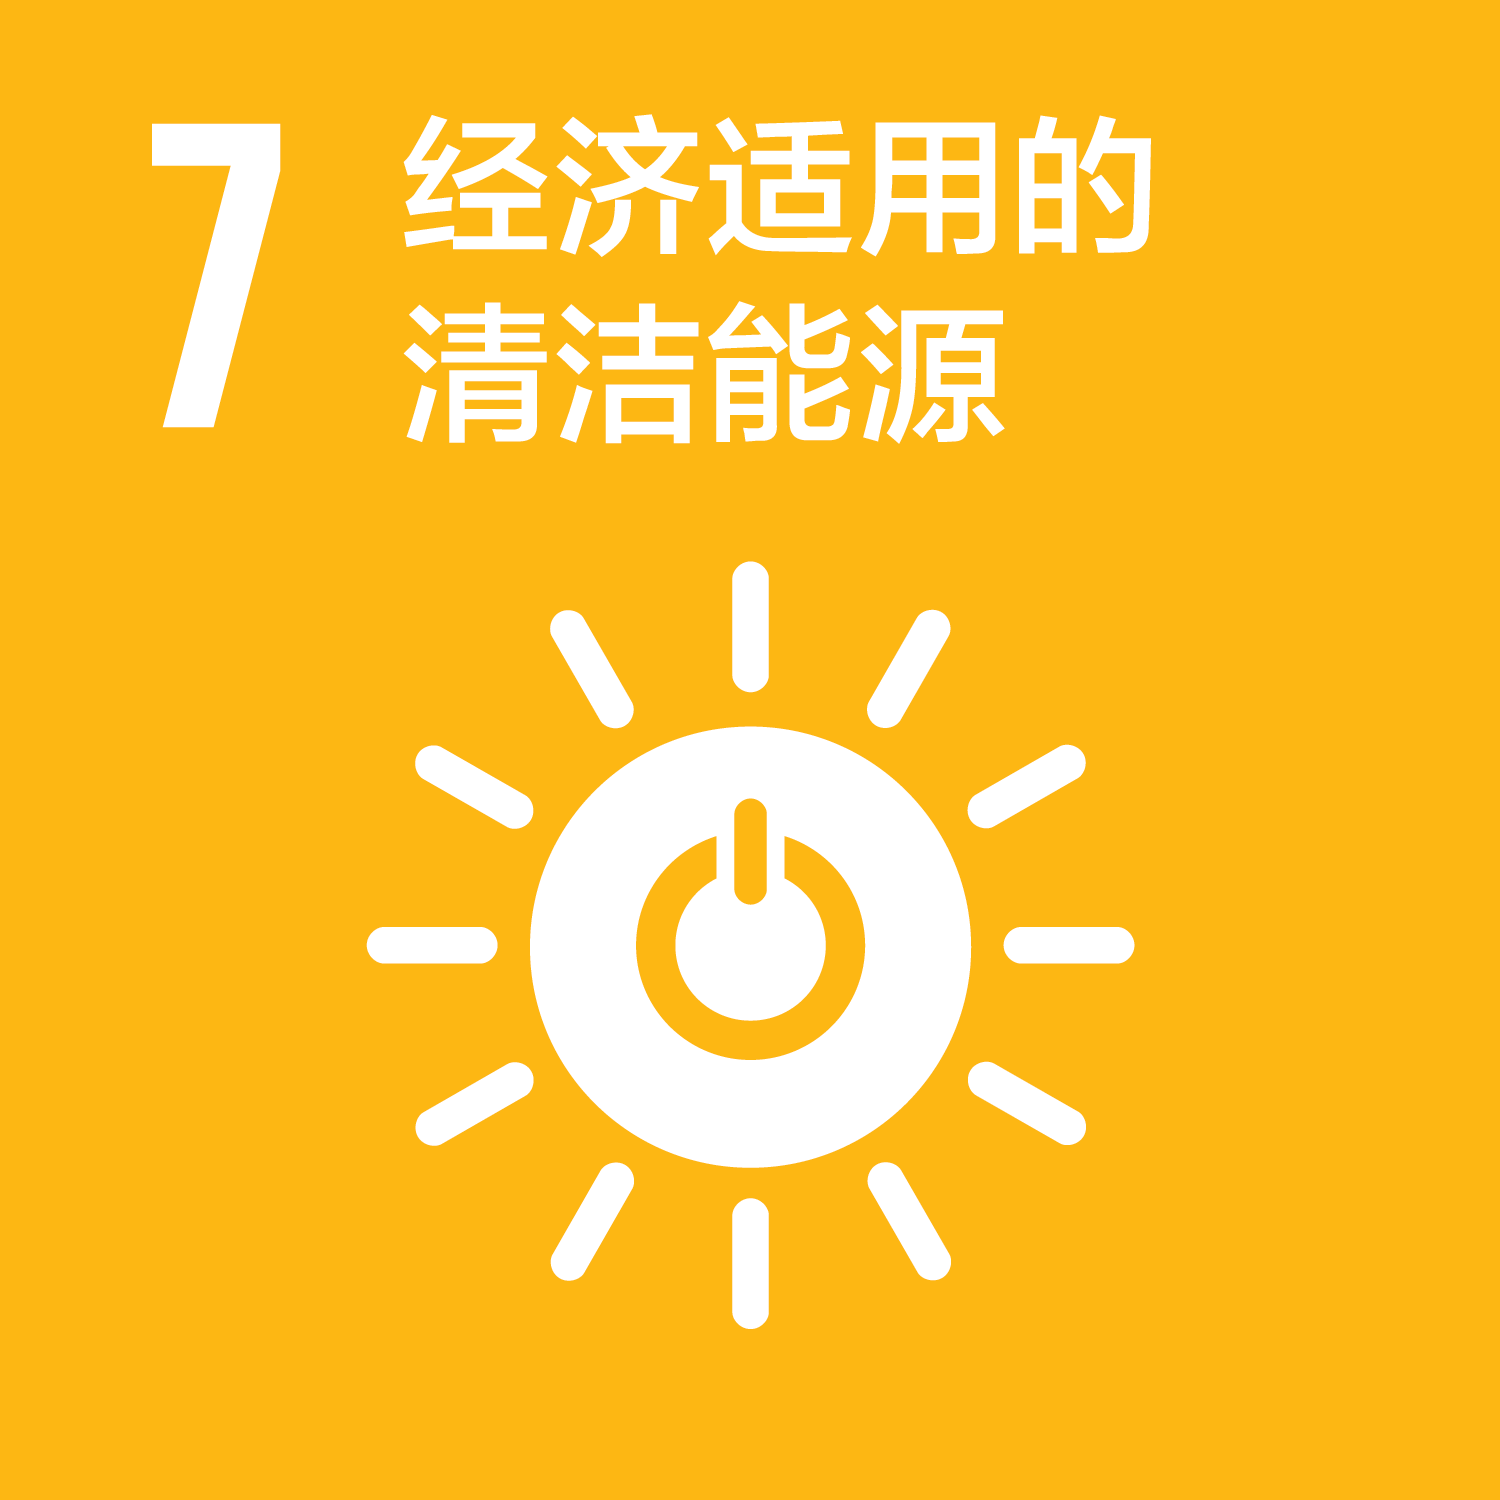 可持续发展目标-7经济适用的清洁能源